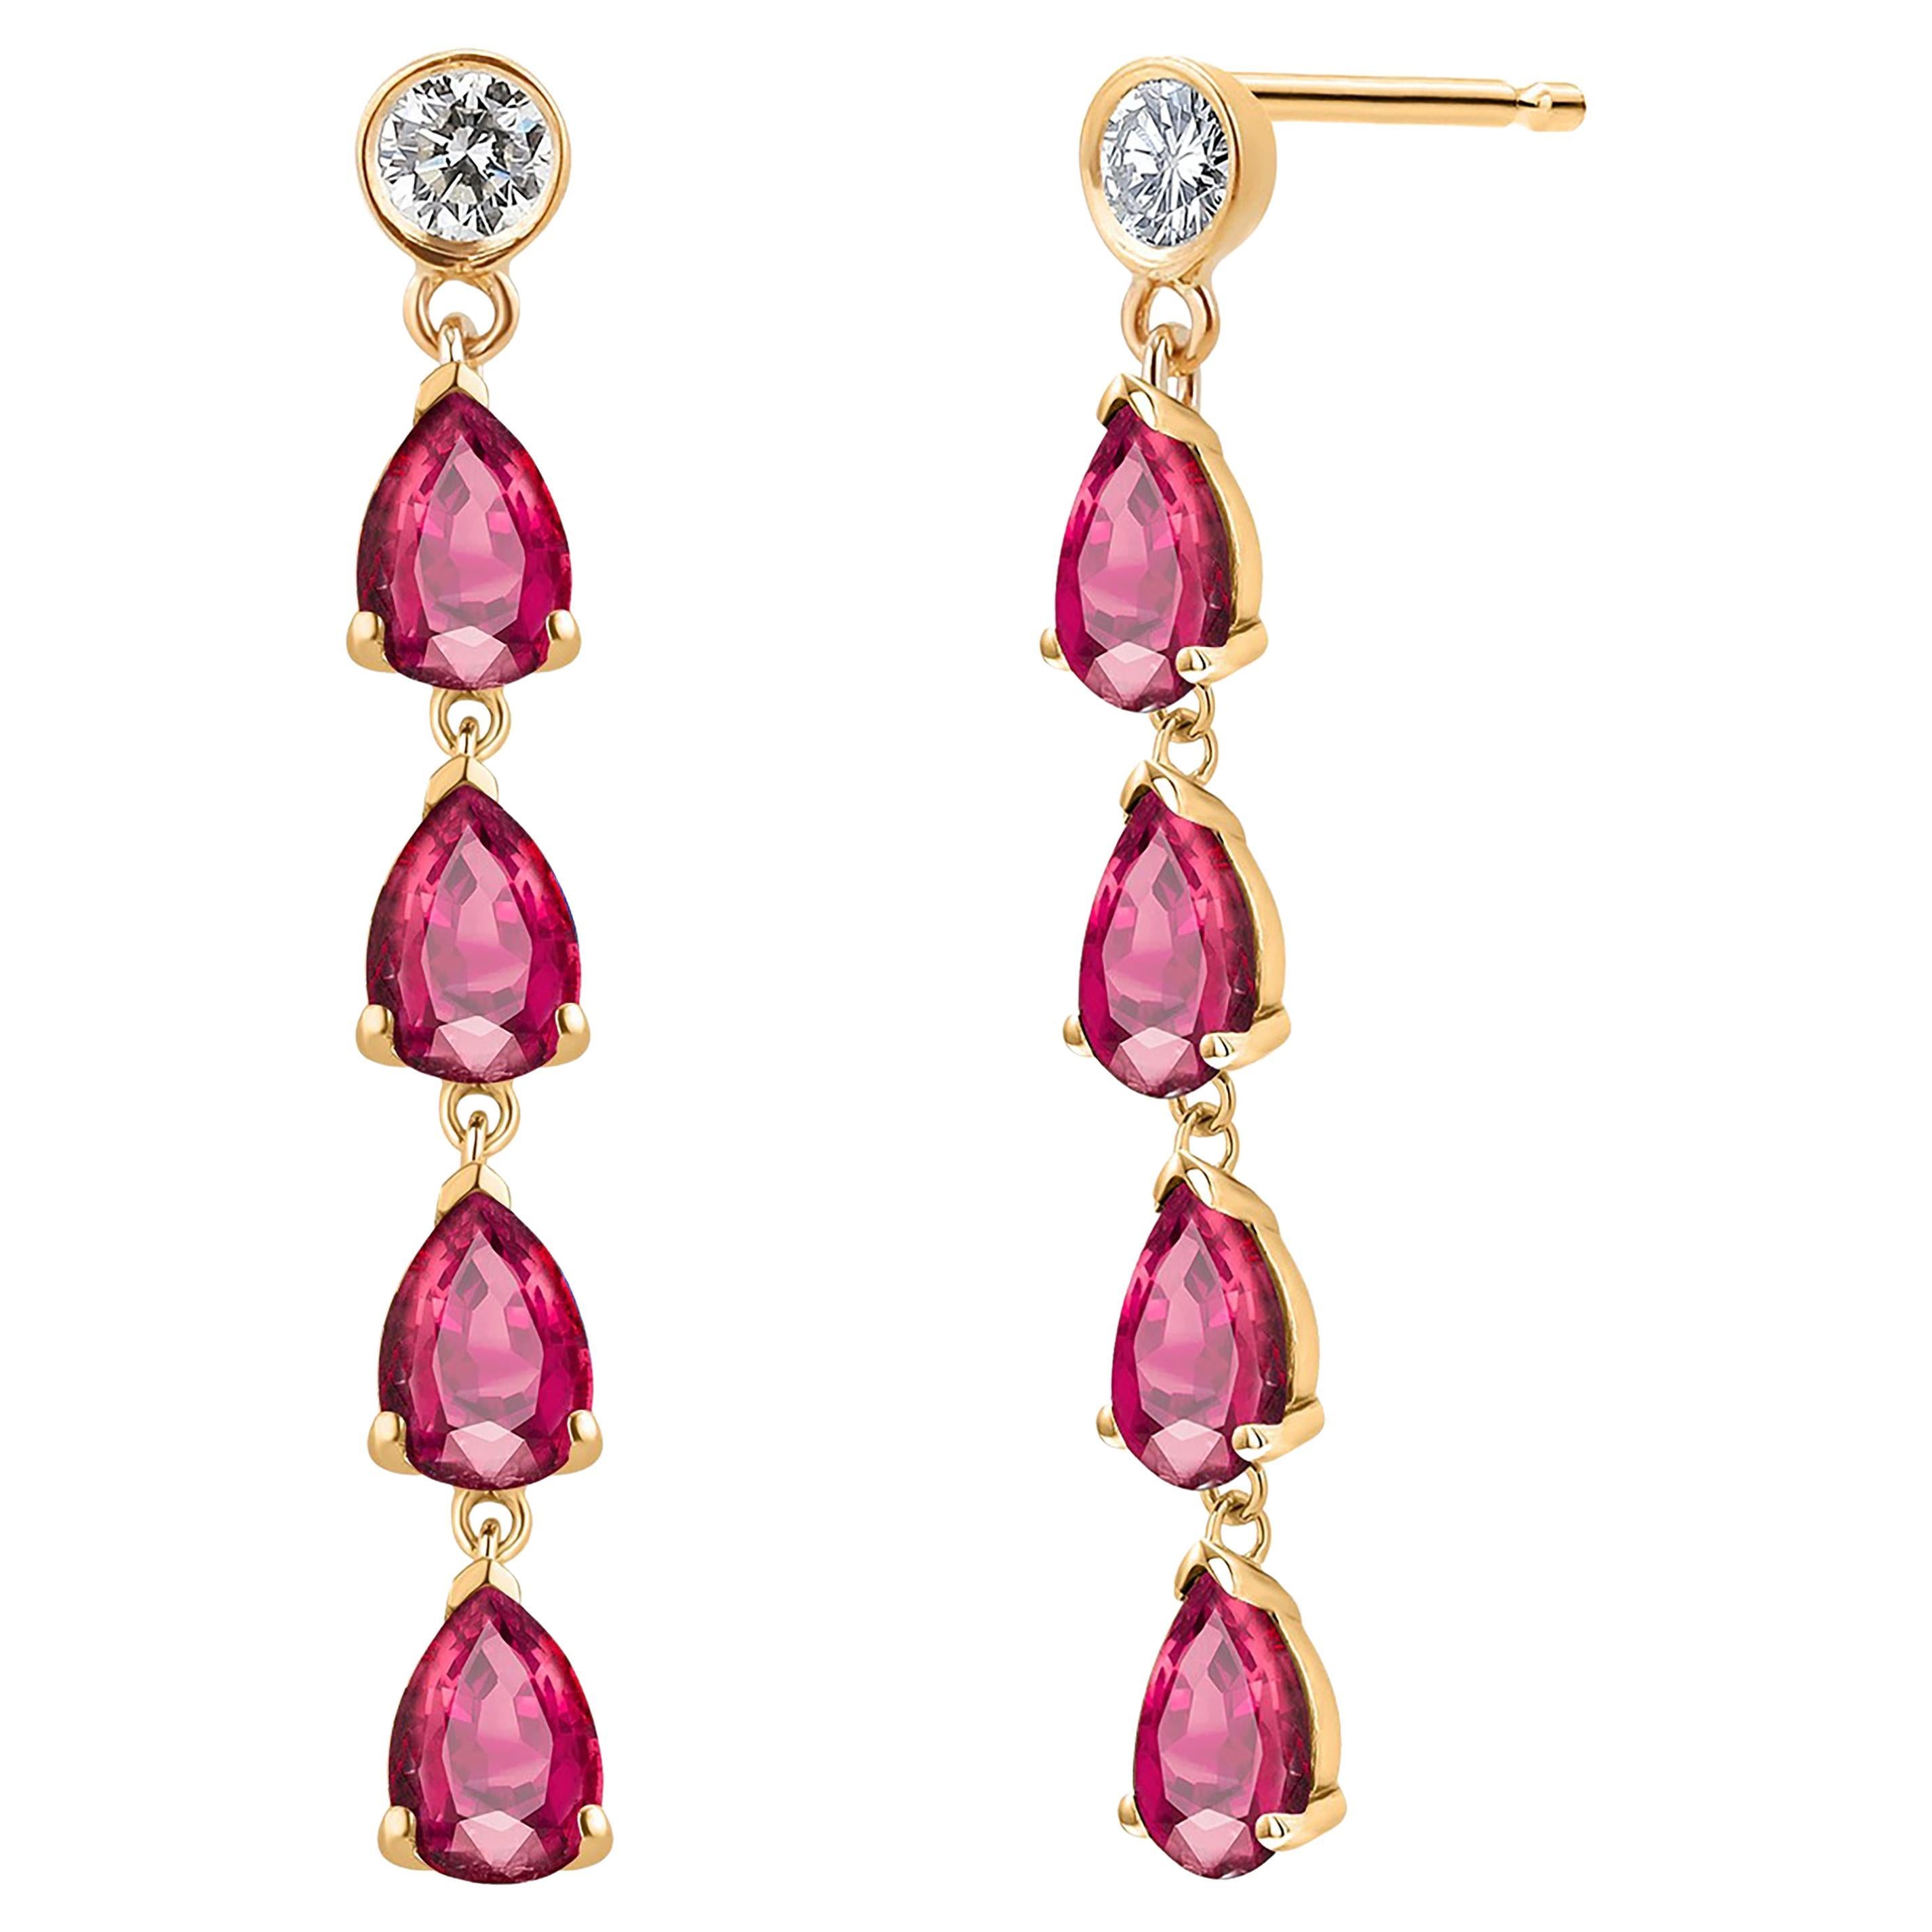 Ten Pear Burma Rubies Diamonds 3.20 Carat 1.55 Inch Long Yellow Gold Earrings  For Sale